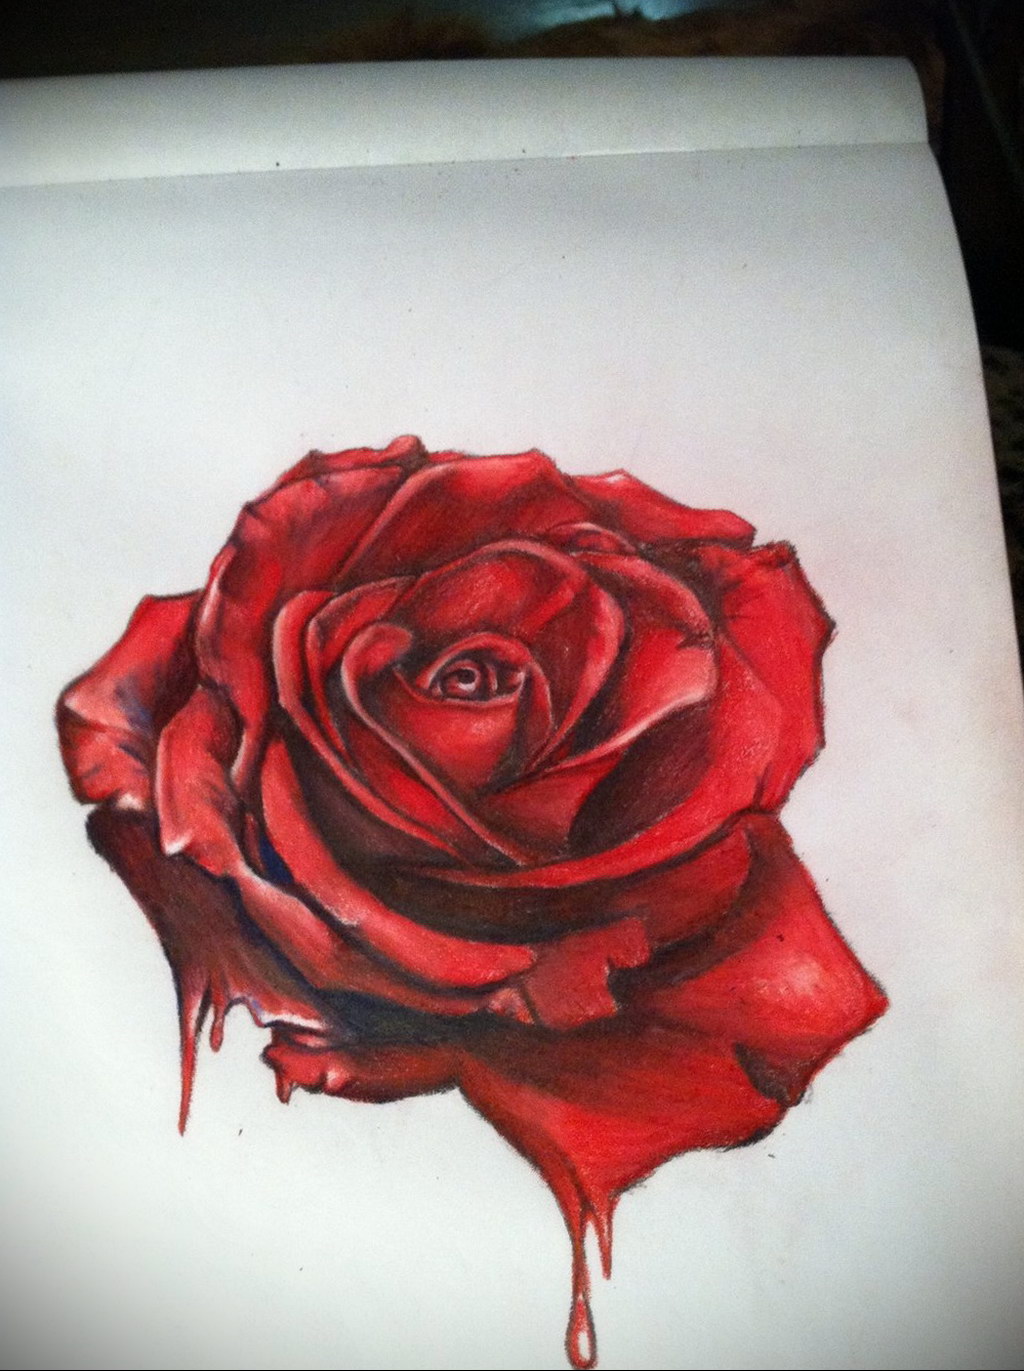 Blood Rose Tattoo  Best Tattoo Ideas Gallery